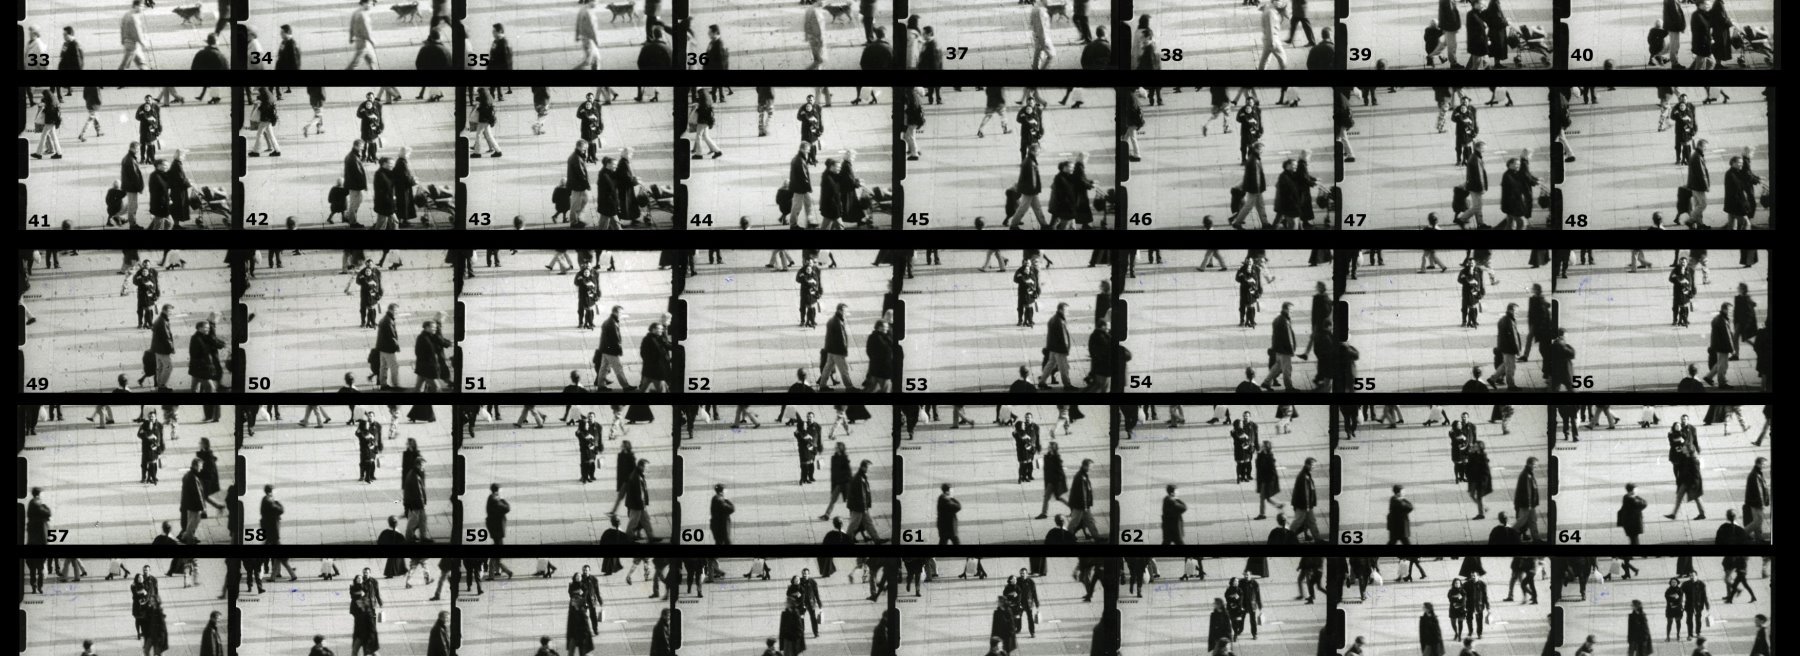 Diese Fotografien sind Vergrößerungen des Super-8-Films, den ich am Donnerstag, den 4. November 1993, um 15:25 Uhr auf dem Schlossplatz in Stuttgart aufgenommen habe. Die Abzüge haben eine Größe von 4x6 cm und wurden auf Ilfospeed-Papier vergrößert.